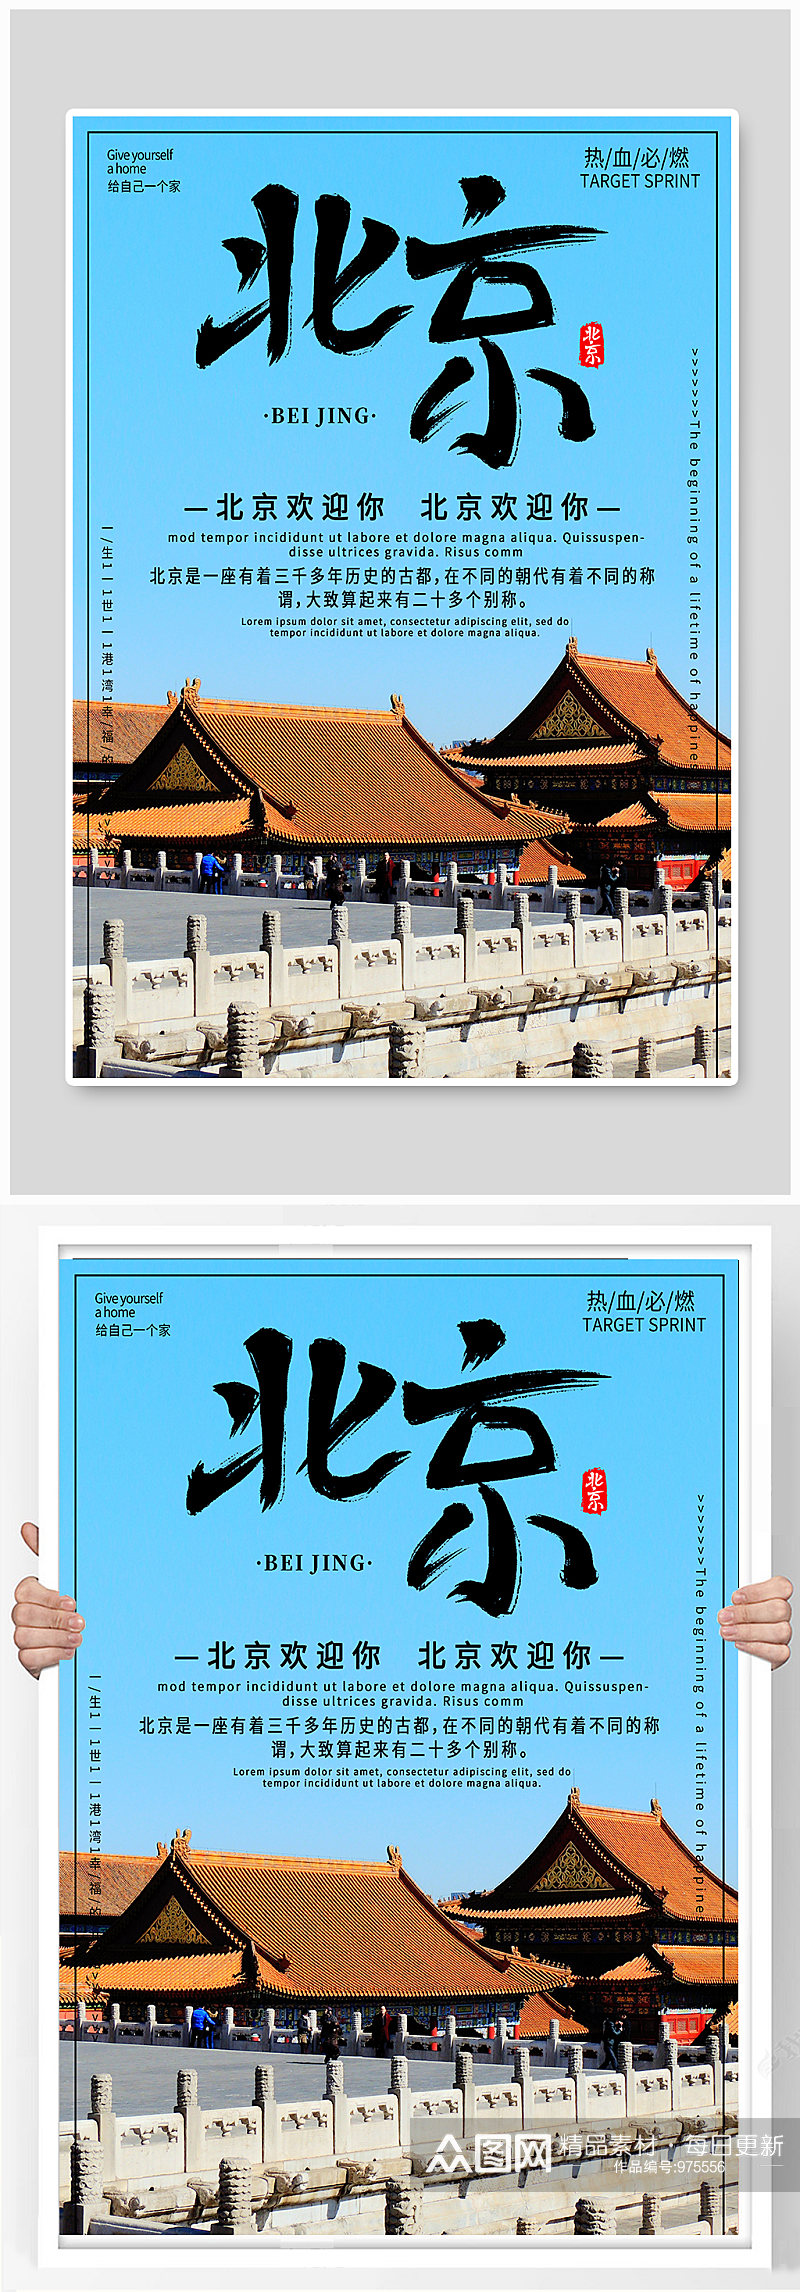 北京度假旅游宣传海报素材